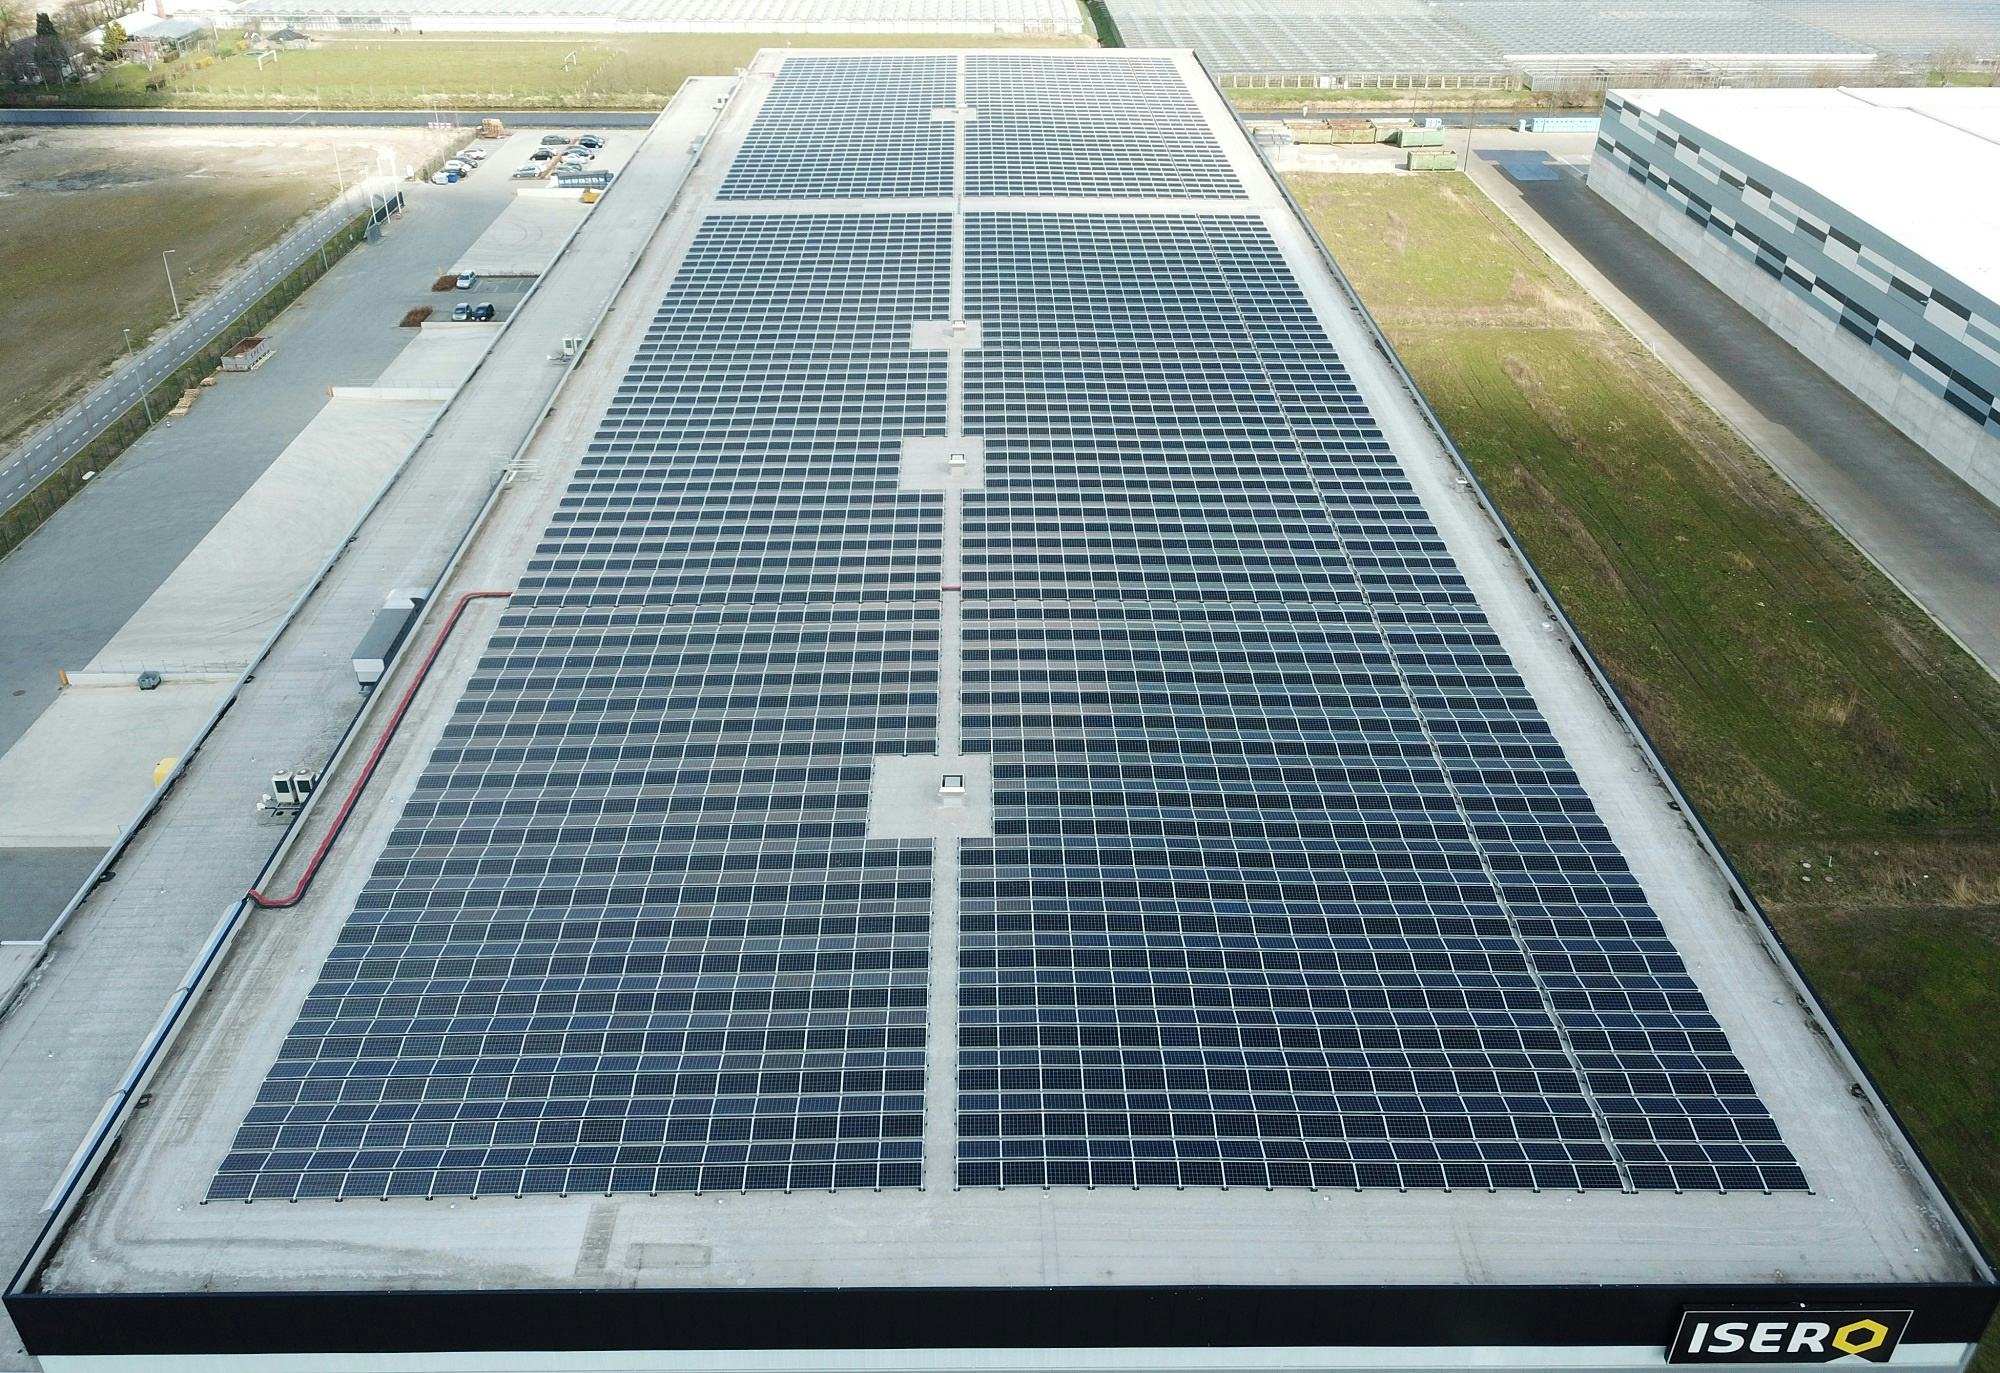 In opdracht van vastgoedontwikkelaar Montea heeft KiesZon 6.300 geplaatst op een distributiecentrum in Waddinxveen. Jaarlijks gaan de zonnepanelen ruim 1,9 miljoen kilowattuur stroom produceren.